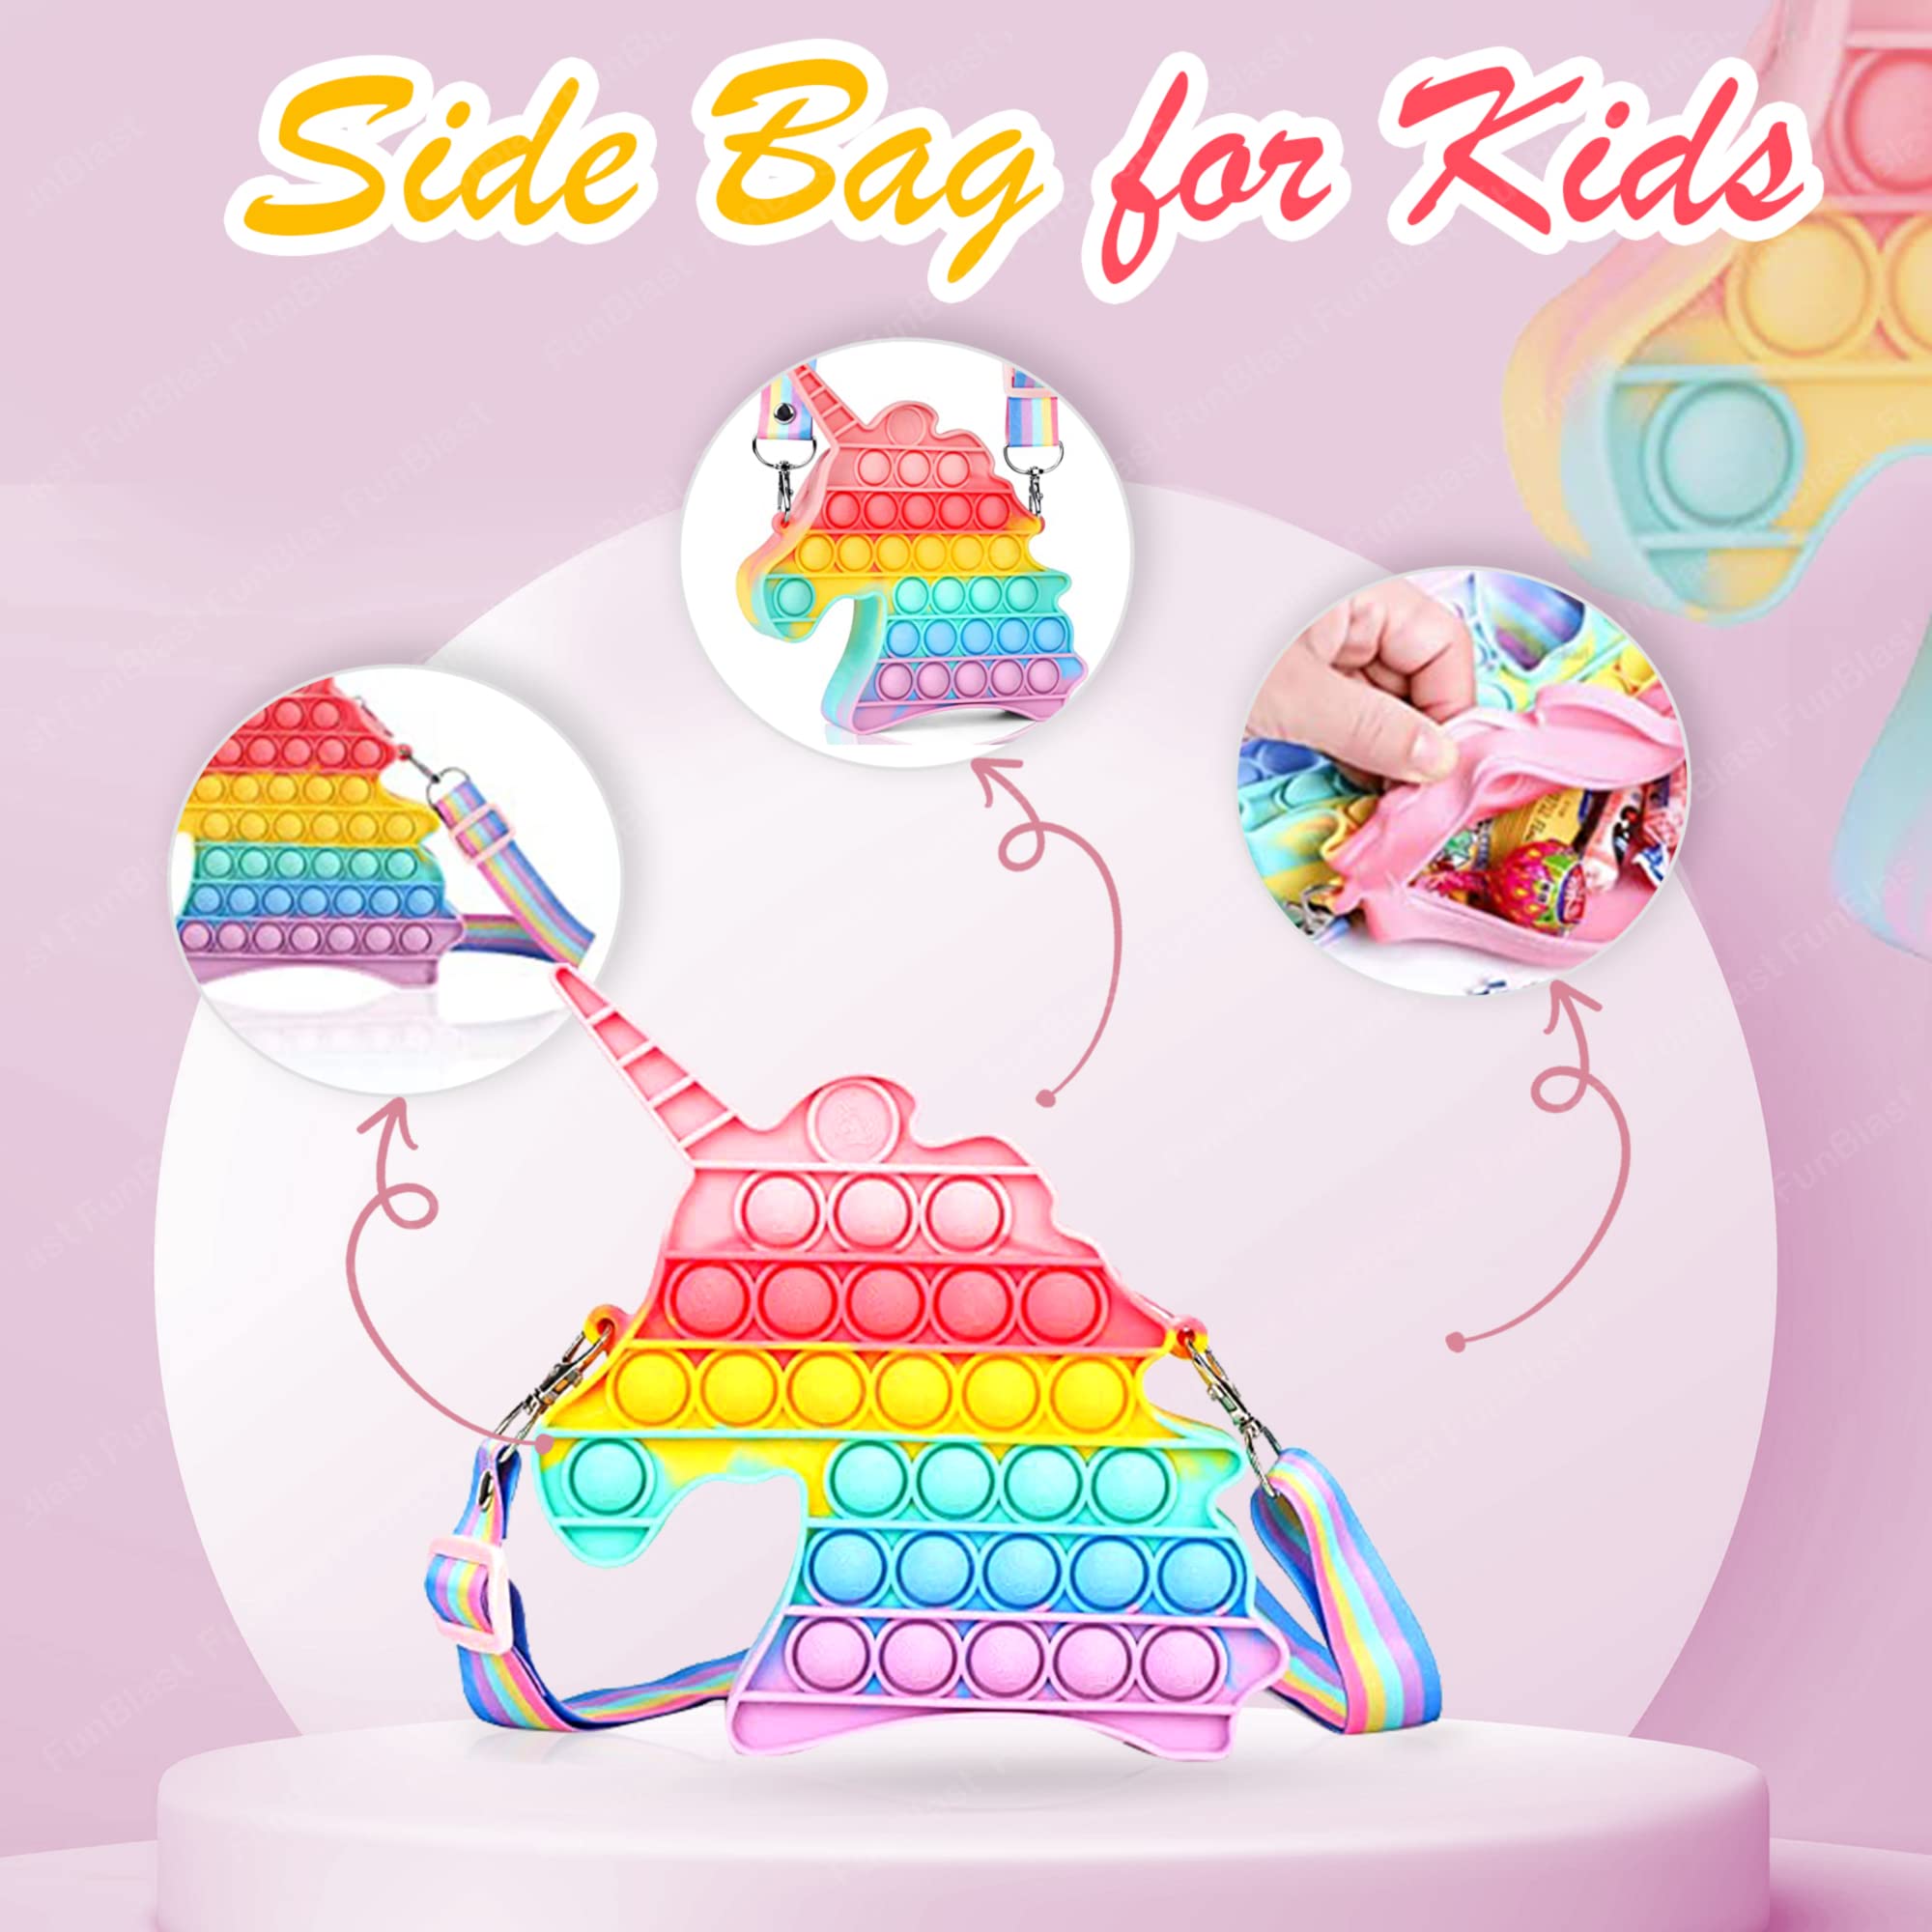 Sling Bag for Girls Crossbody Bag for Kids Sling Bag with Keychain for Girls, Sling Bag for Girls Coin Purse